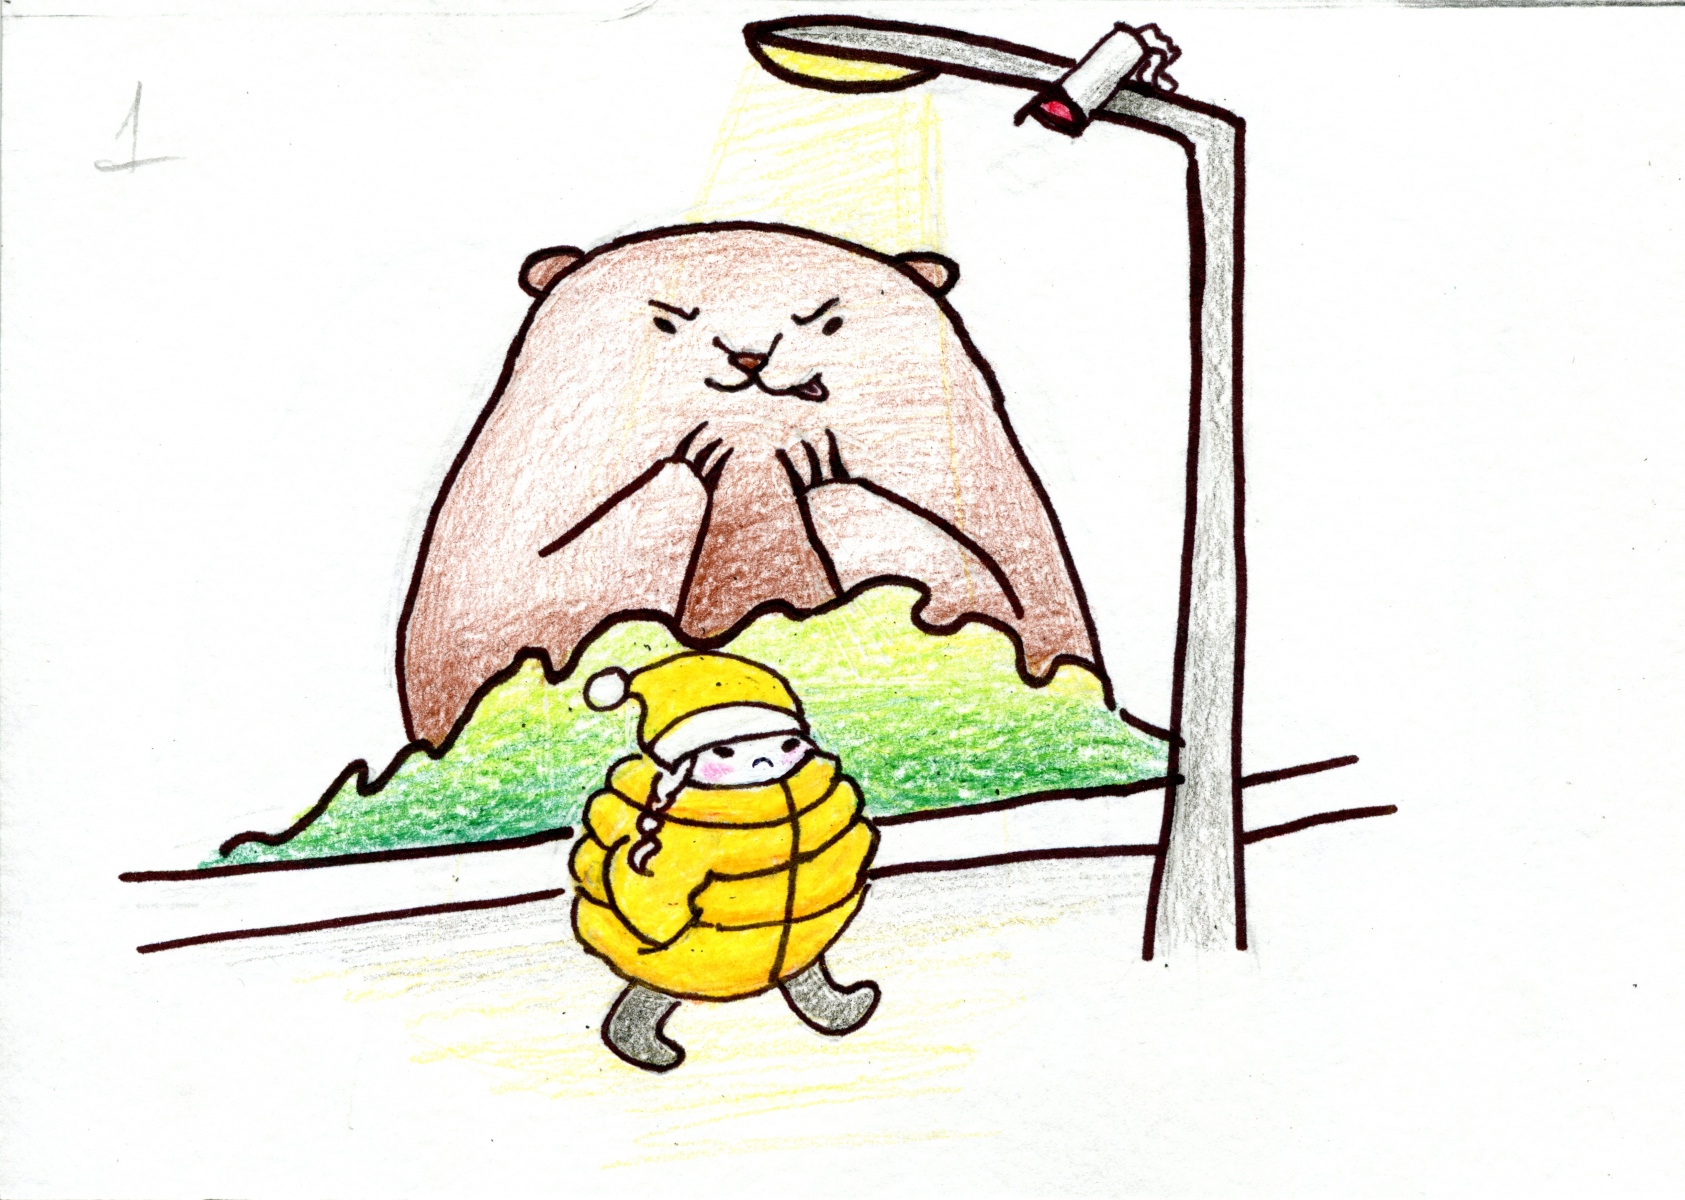 В Костанае нашли медведя который чуть не съел девочку в желтом платье, перепутав её с баначкой мёда,  это было записано на камеру, на уличном фонаре в парке